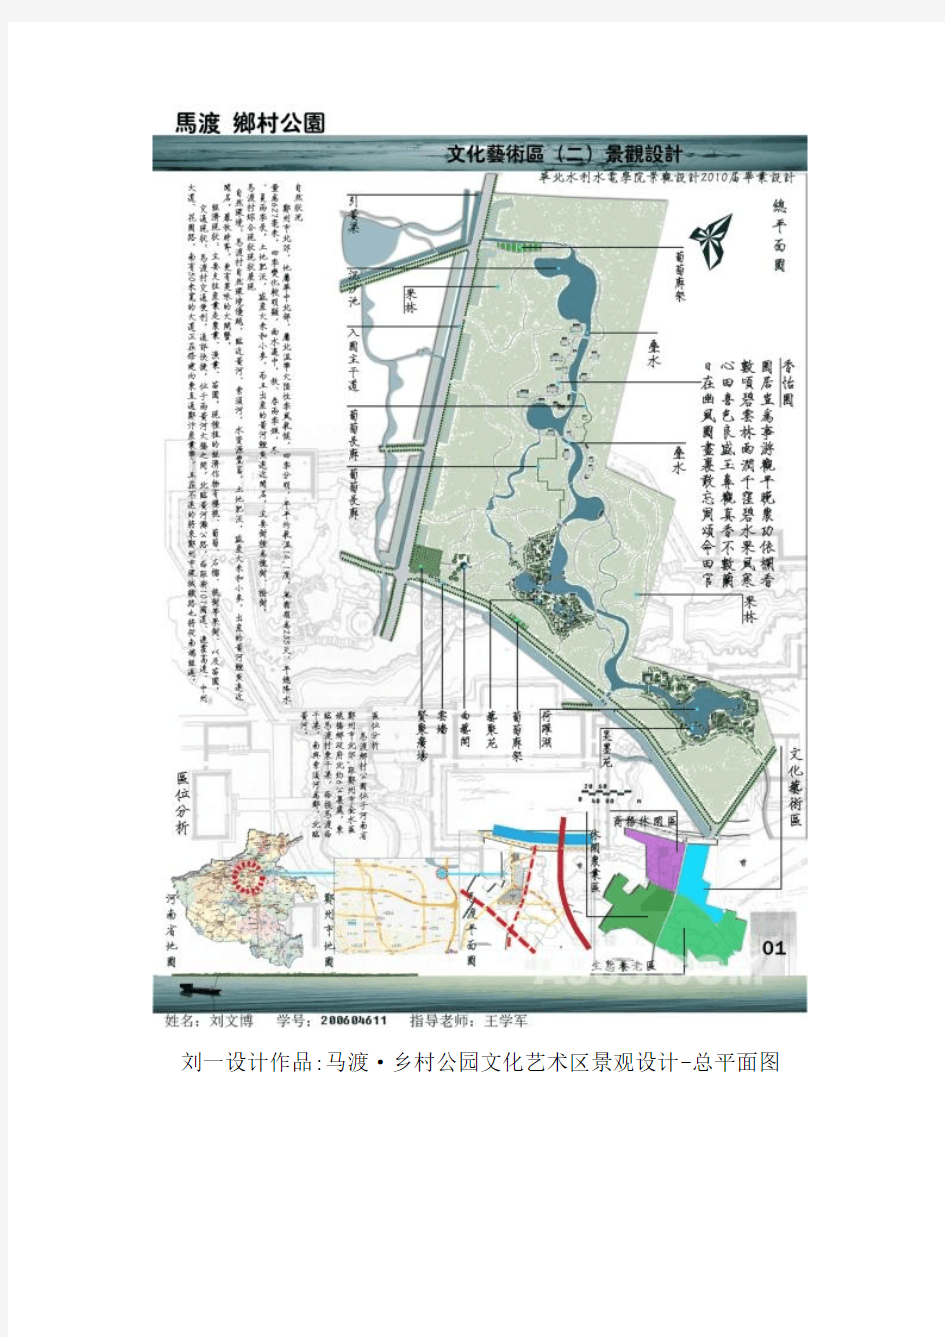 郑州新农村建设别墅项目--马渡·乡村公园文化艺术区景观设计